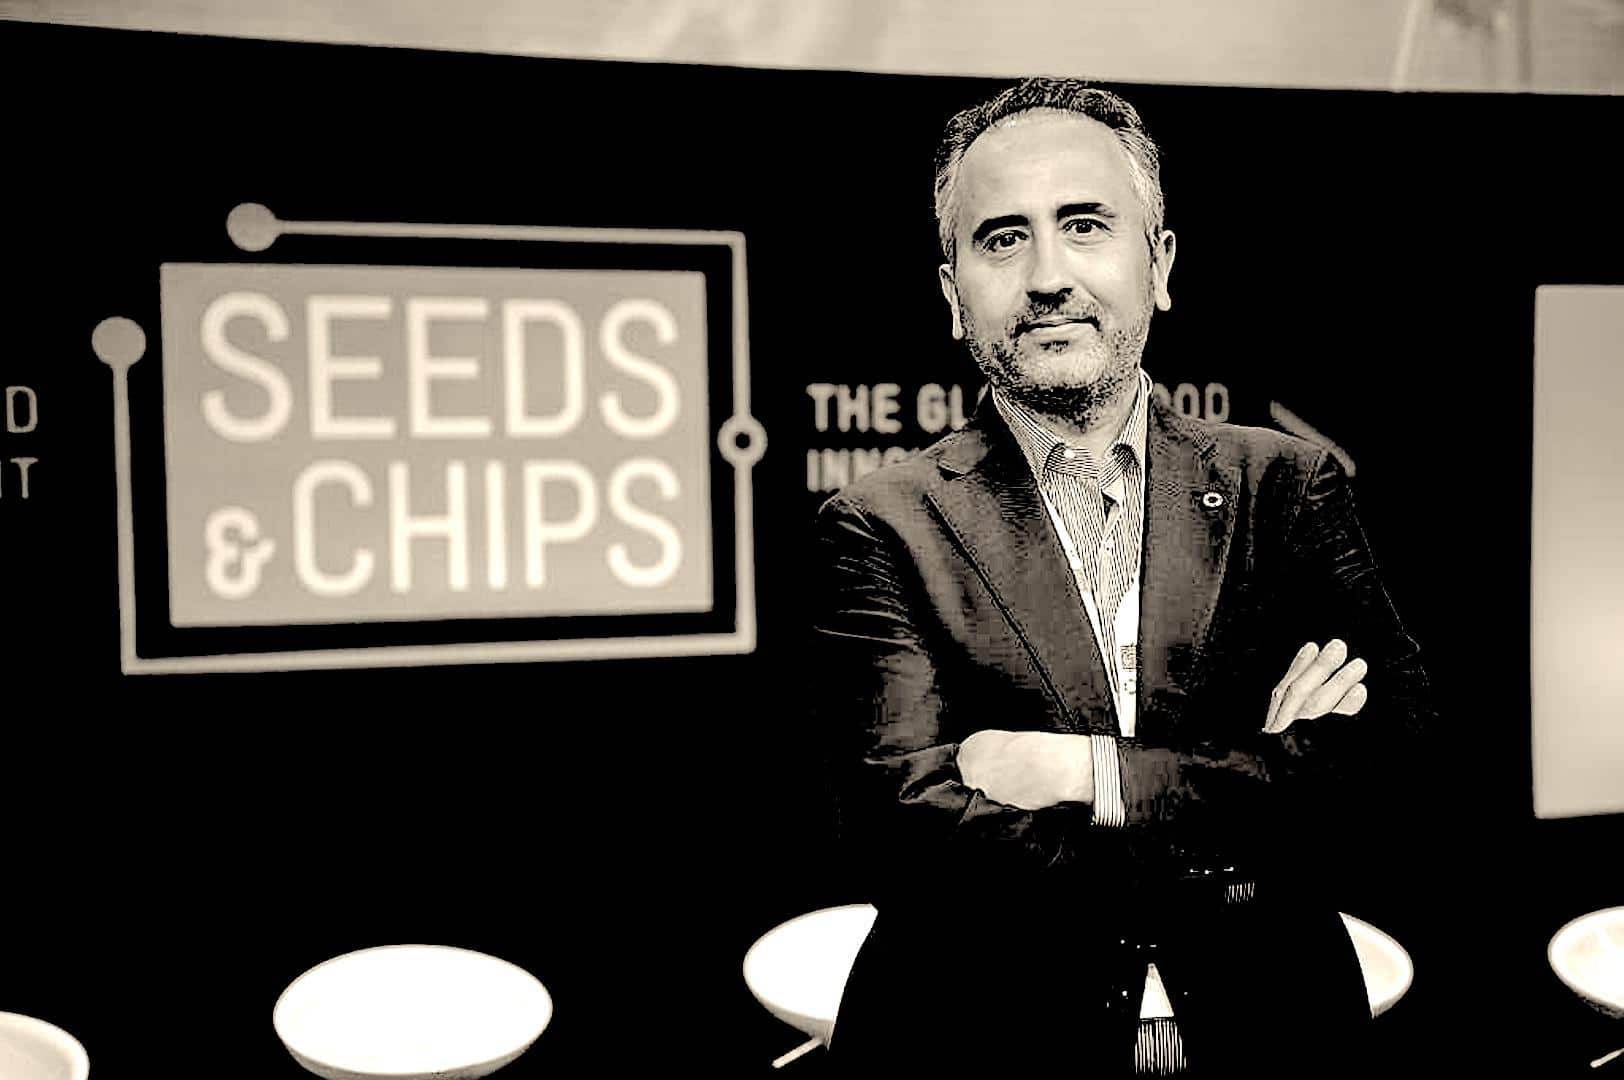 Fondatore di Seeds & Chips, il summit sul futuro del cibo